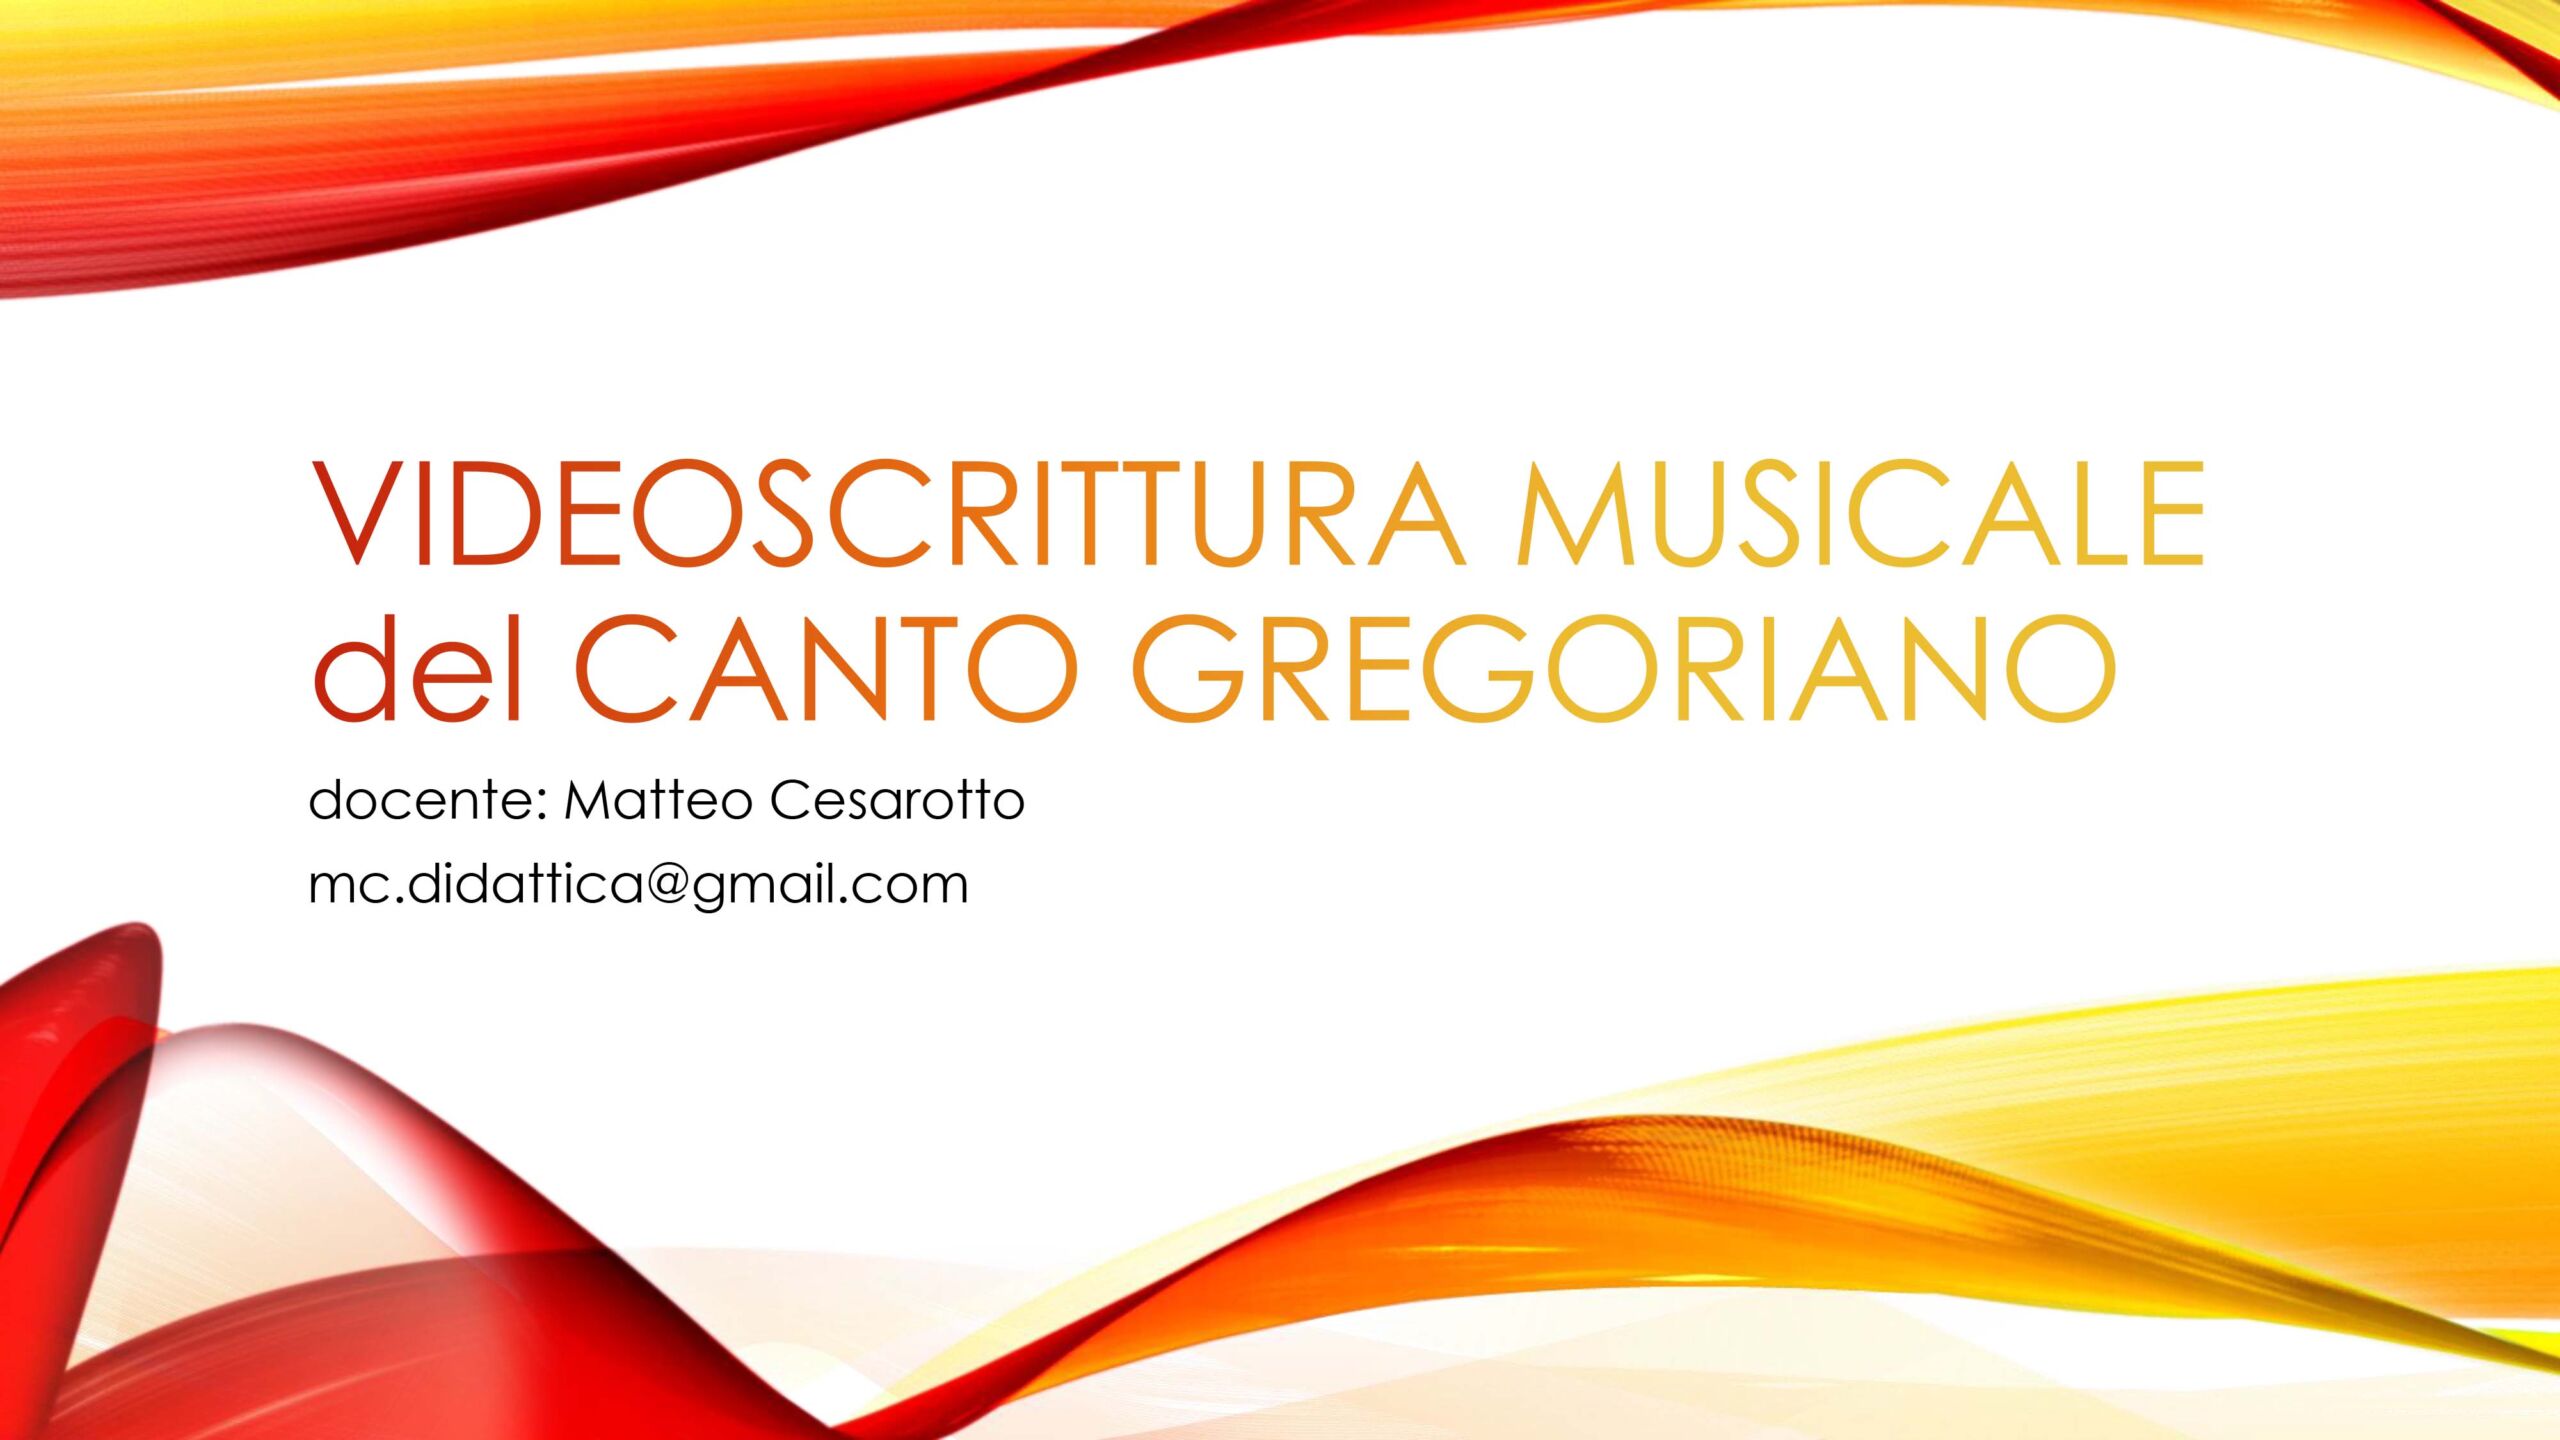 Corso di Videoscrittura musicale del canto gregoriano